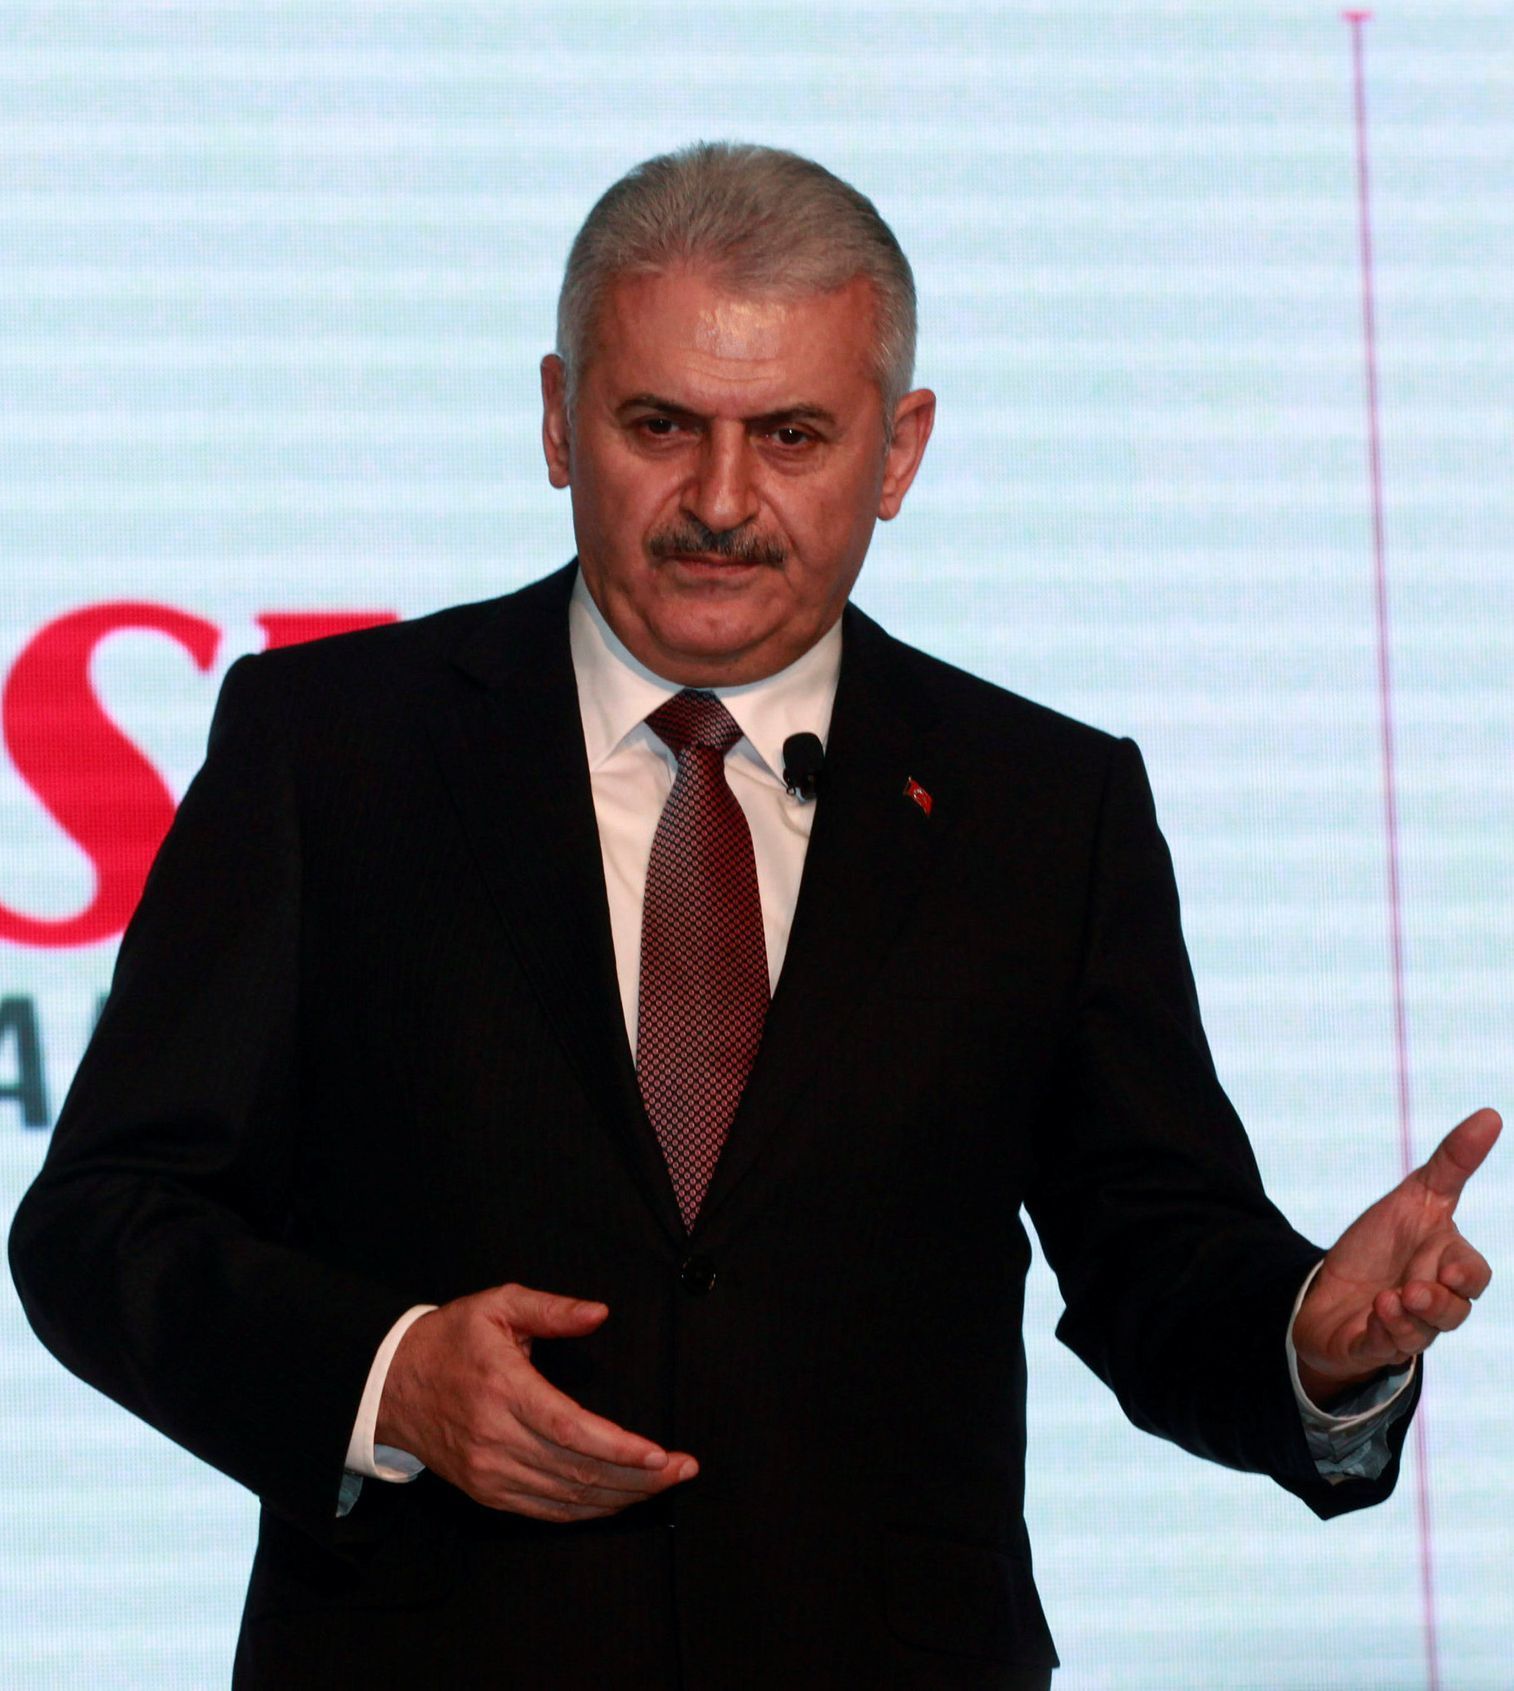 Turecký ministr dopravy Binali Yildirim a jediný kandidát na předsedu AKP a tudíž premiéra země.